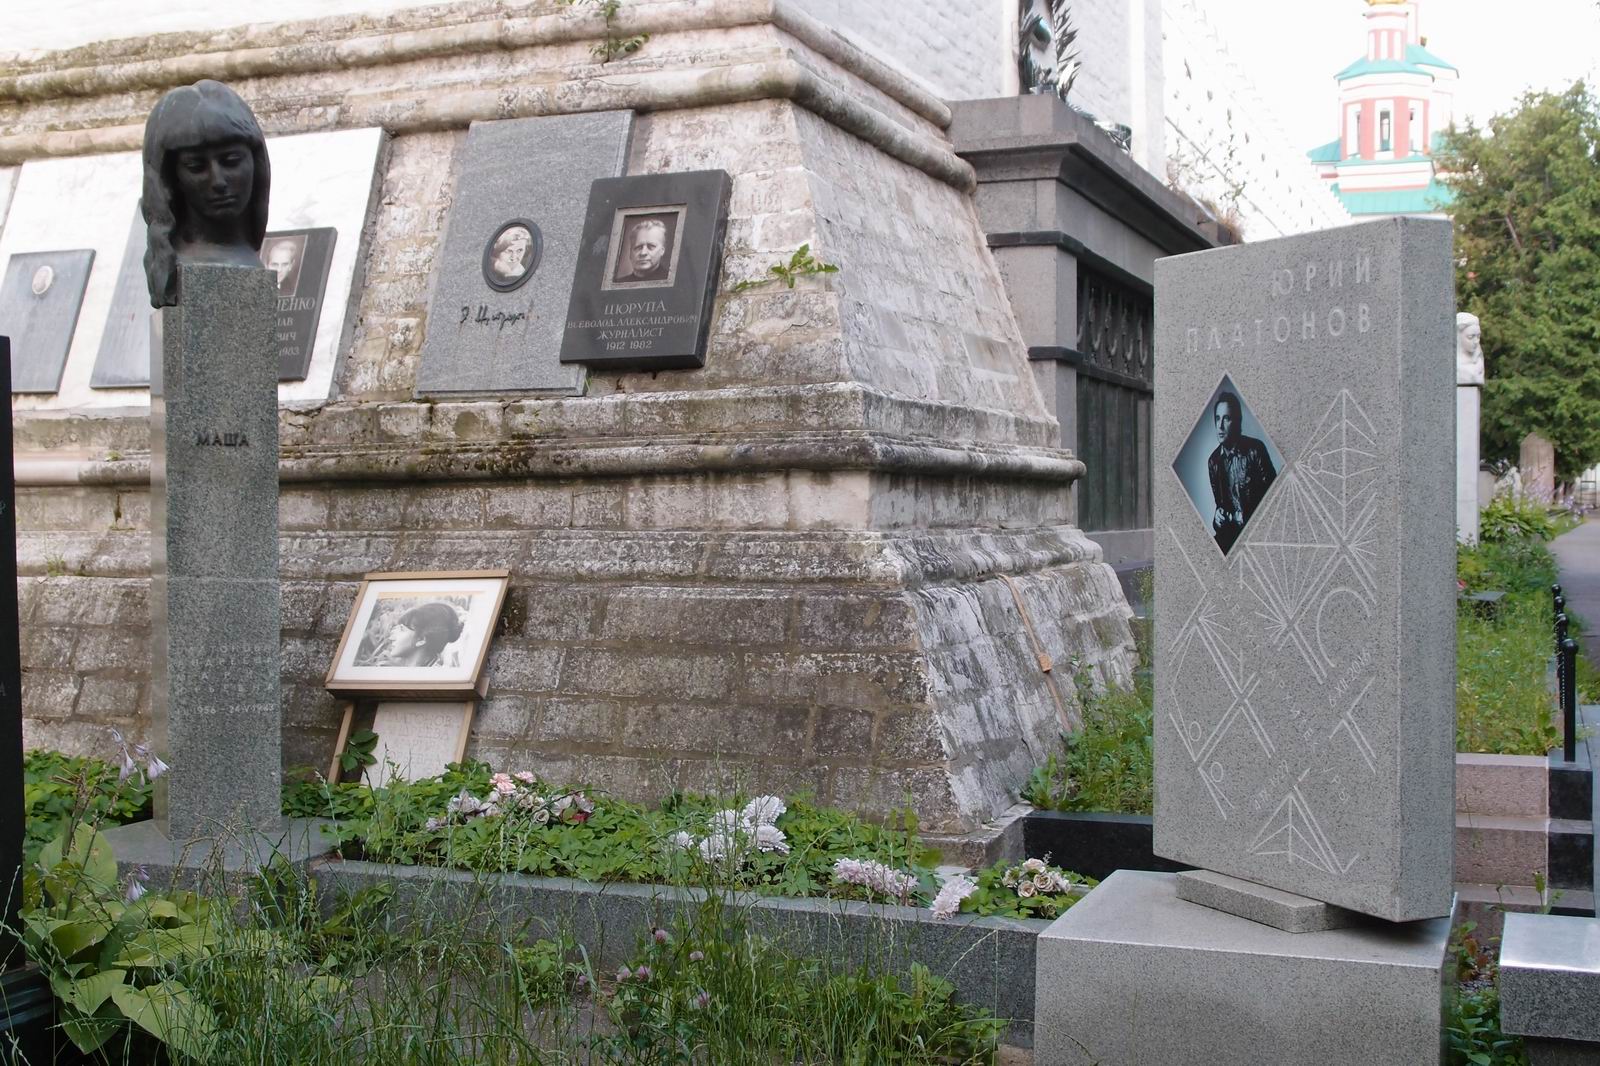 Памятник на могиле Платонова Ю.П. (1929–2016), на Новодевичьем кладбище (3–65–10). Нажмите левую кнопку мыши чтобы увидеть фрагмент памятника.